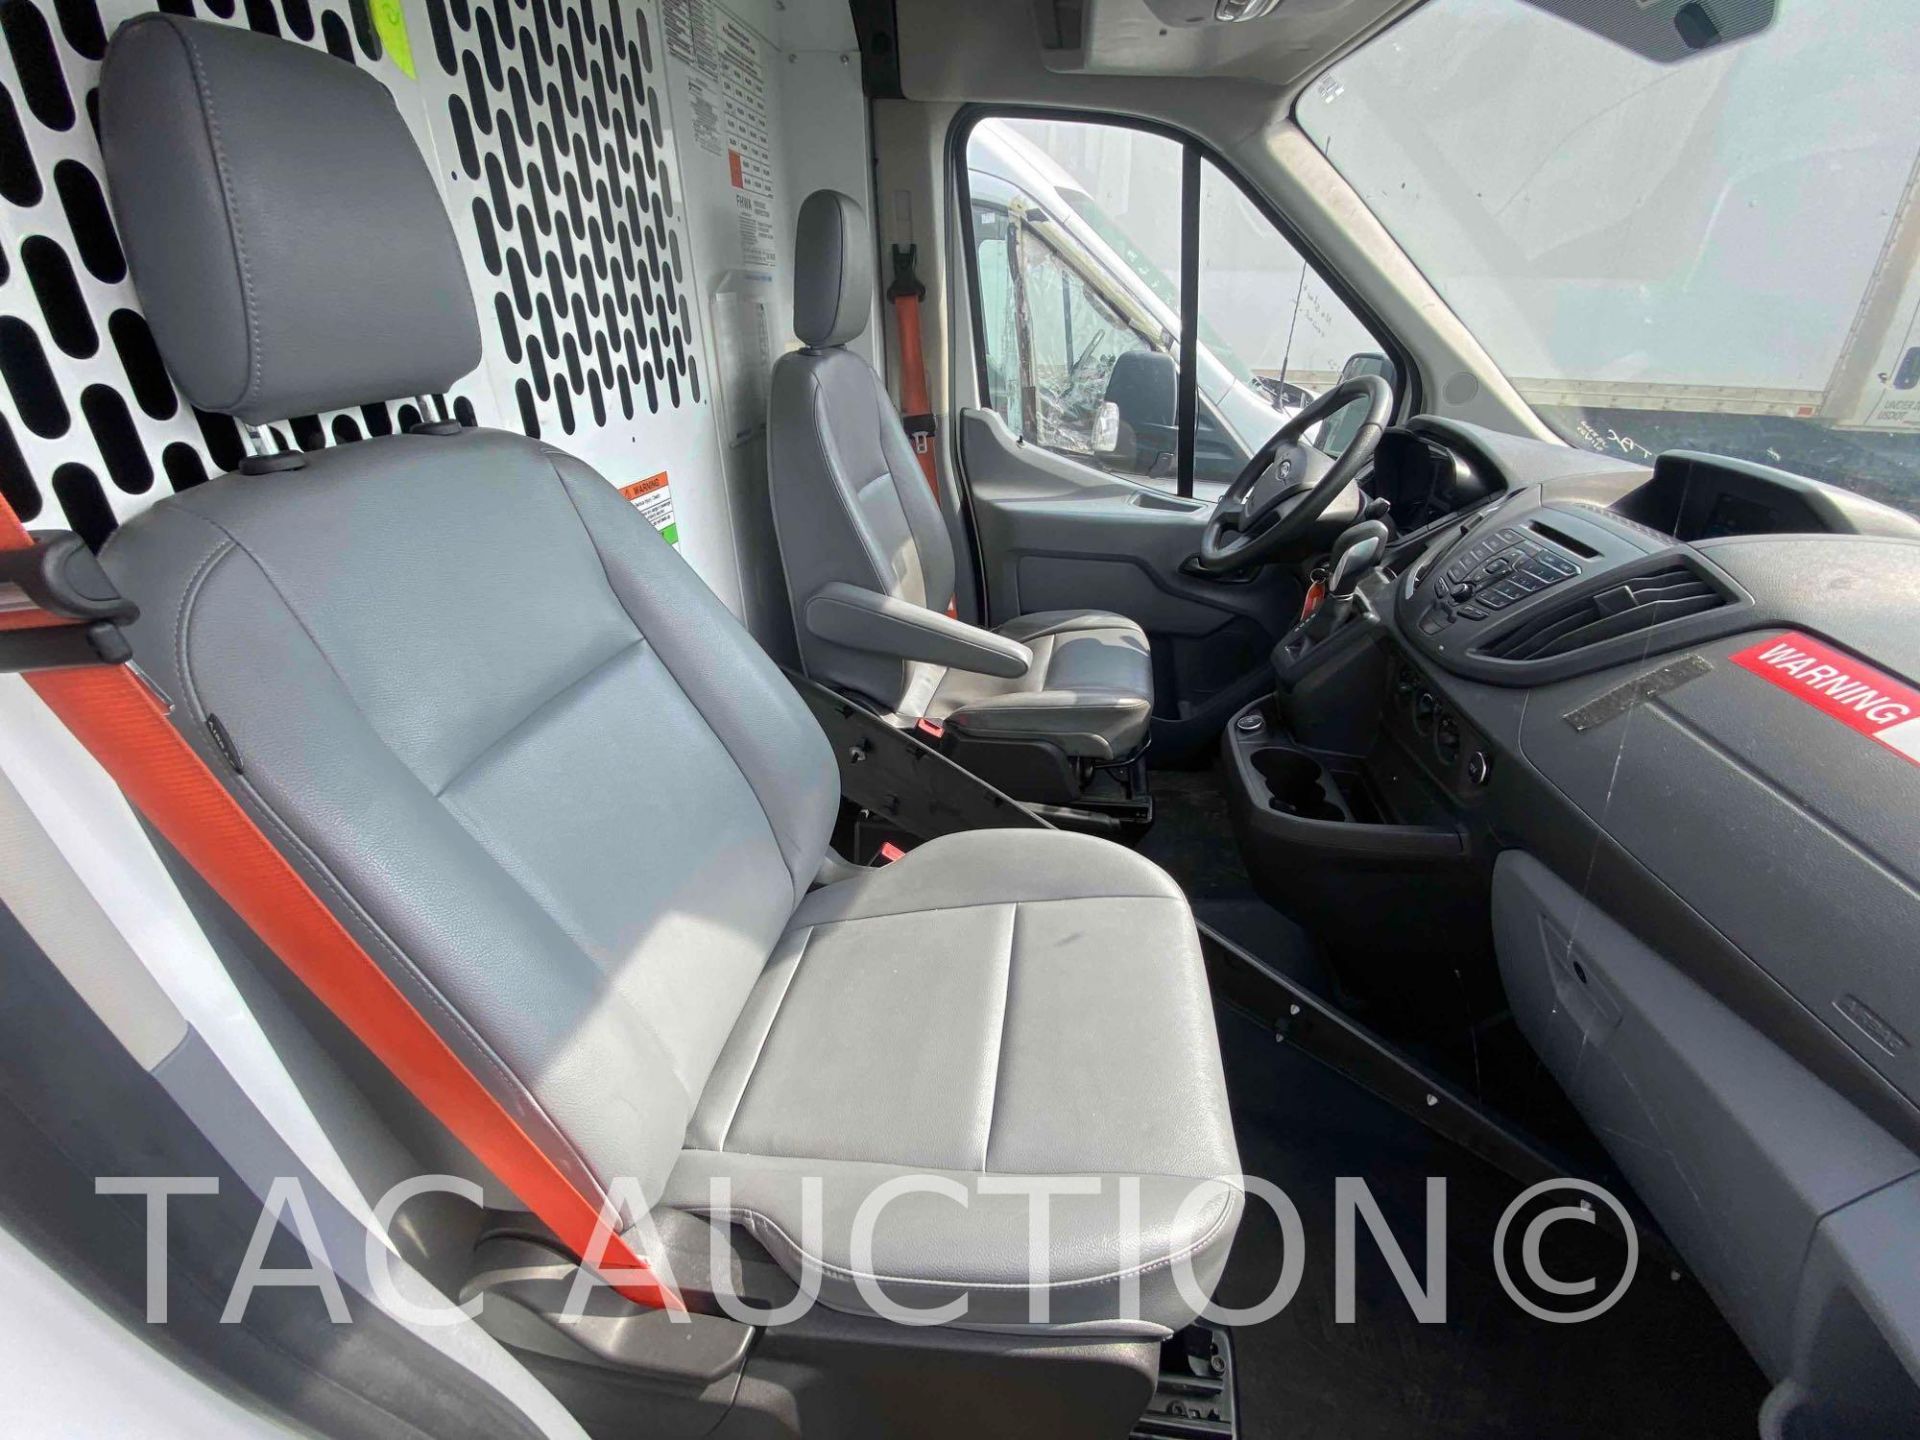 2019 Ford Transit 150 Cargo Van - Image 18 of 45